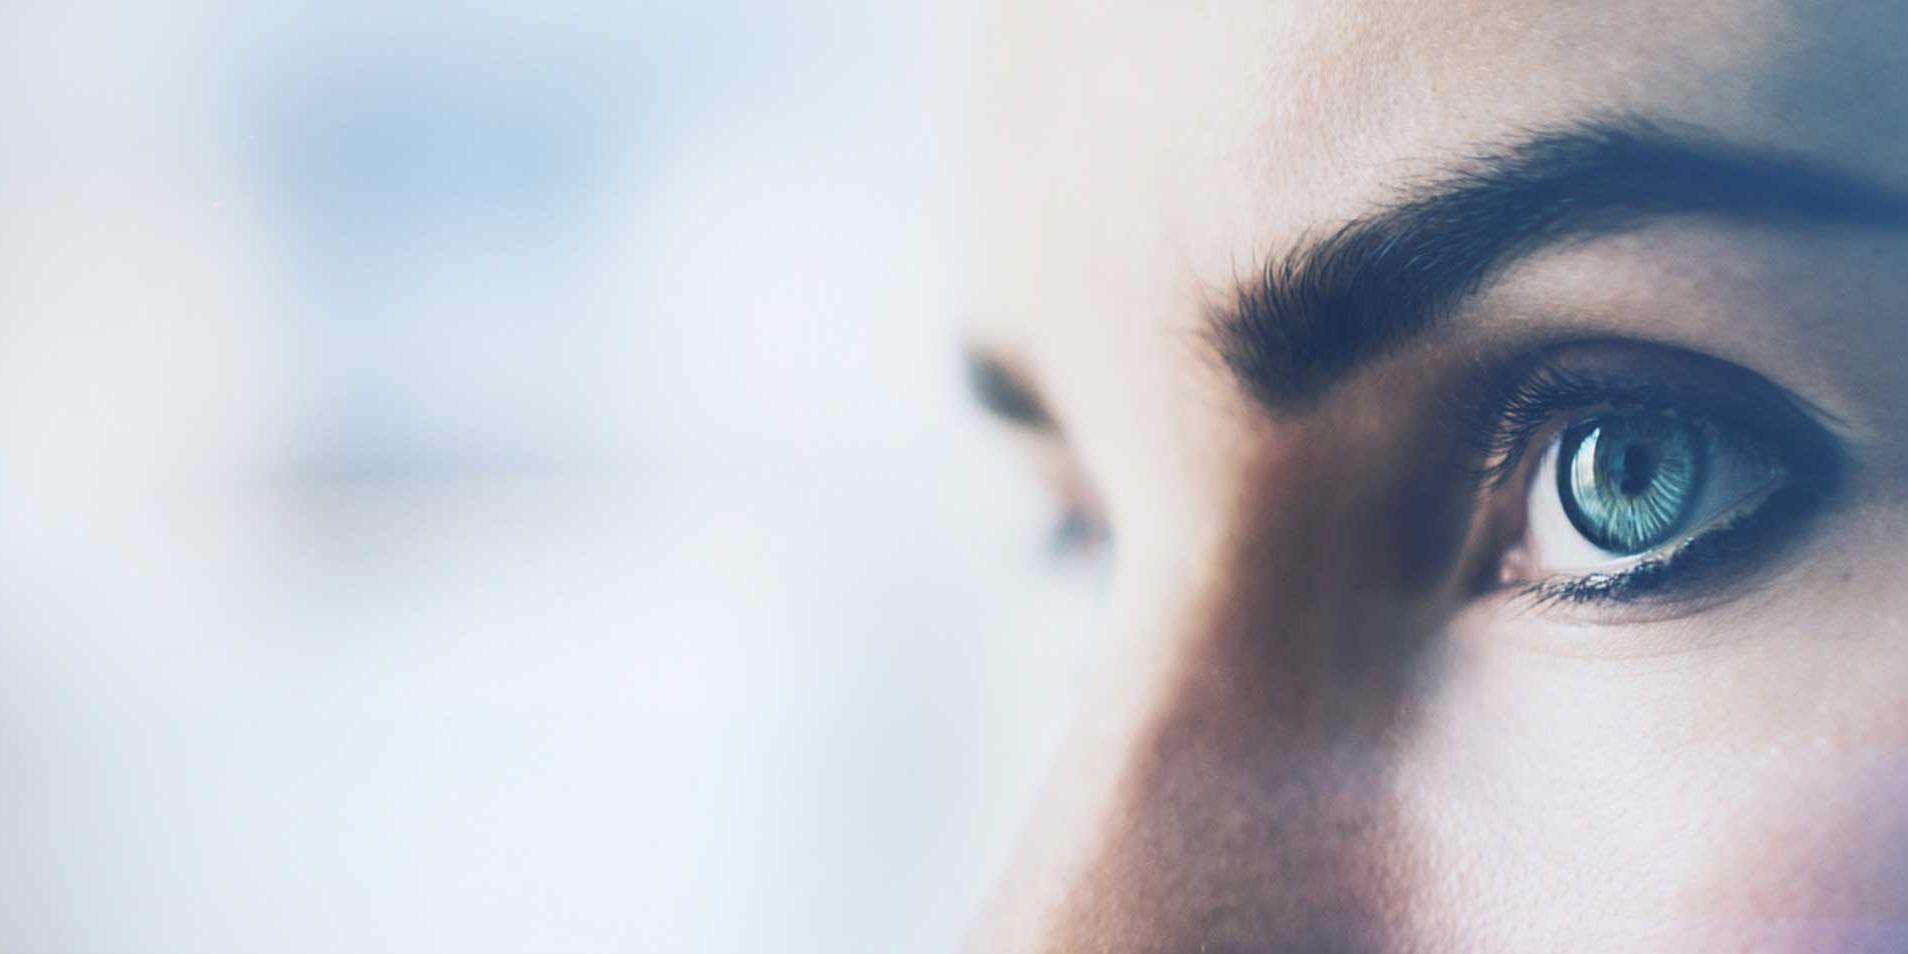 Närbild på en kvinnas öga med visuella effekter, enskilt på en vit bakgrund